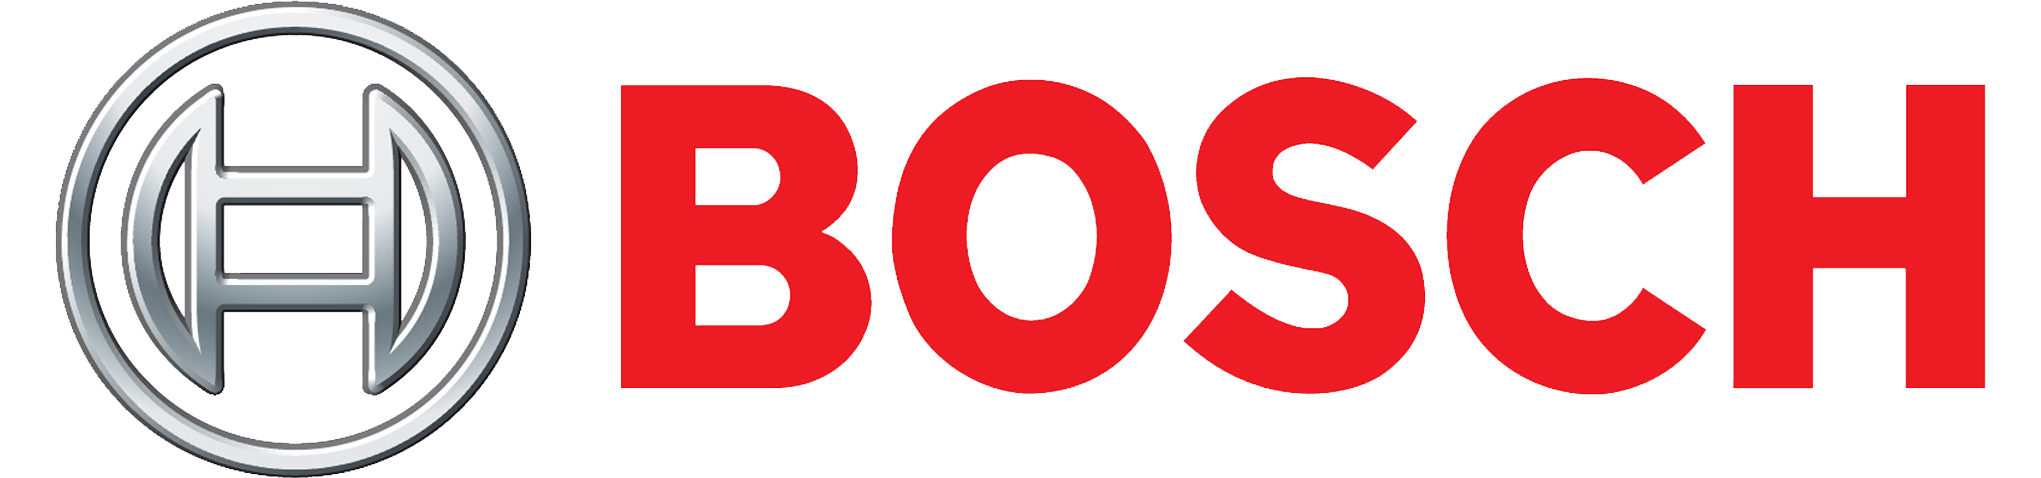 news logo bosch